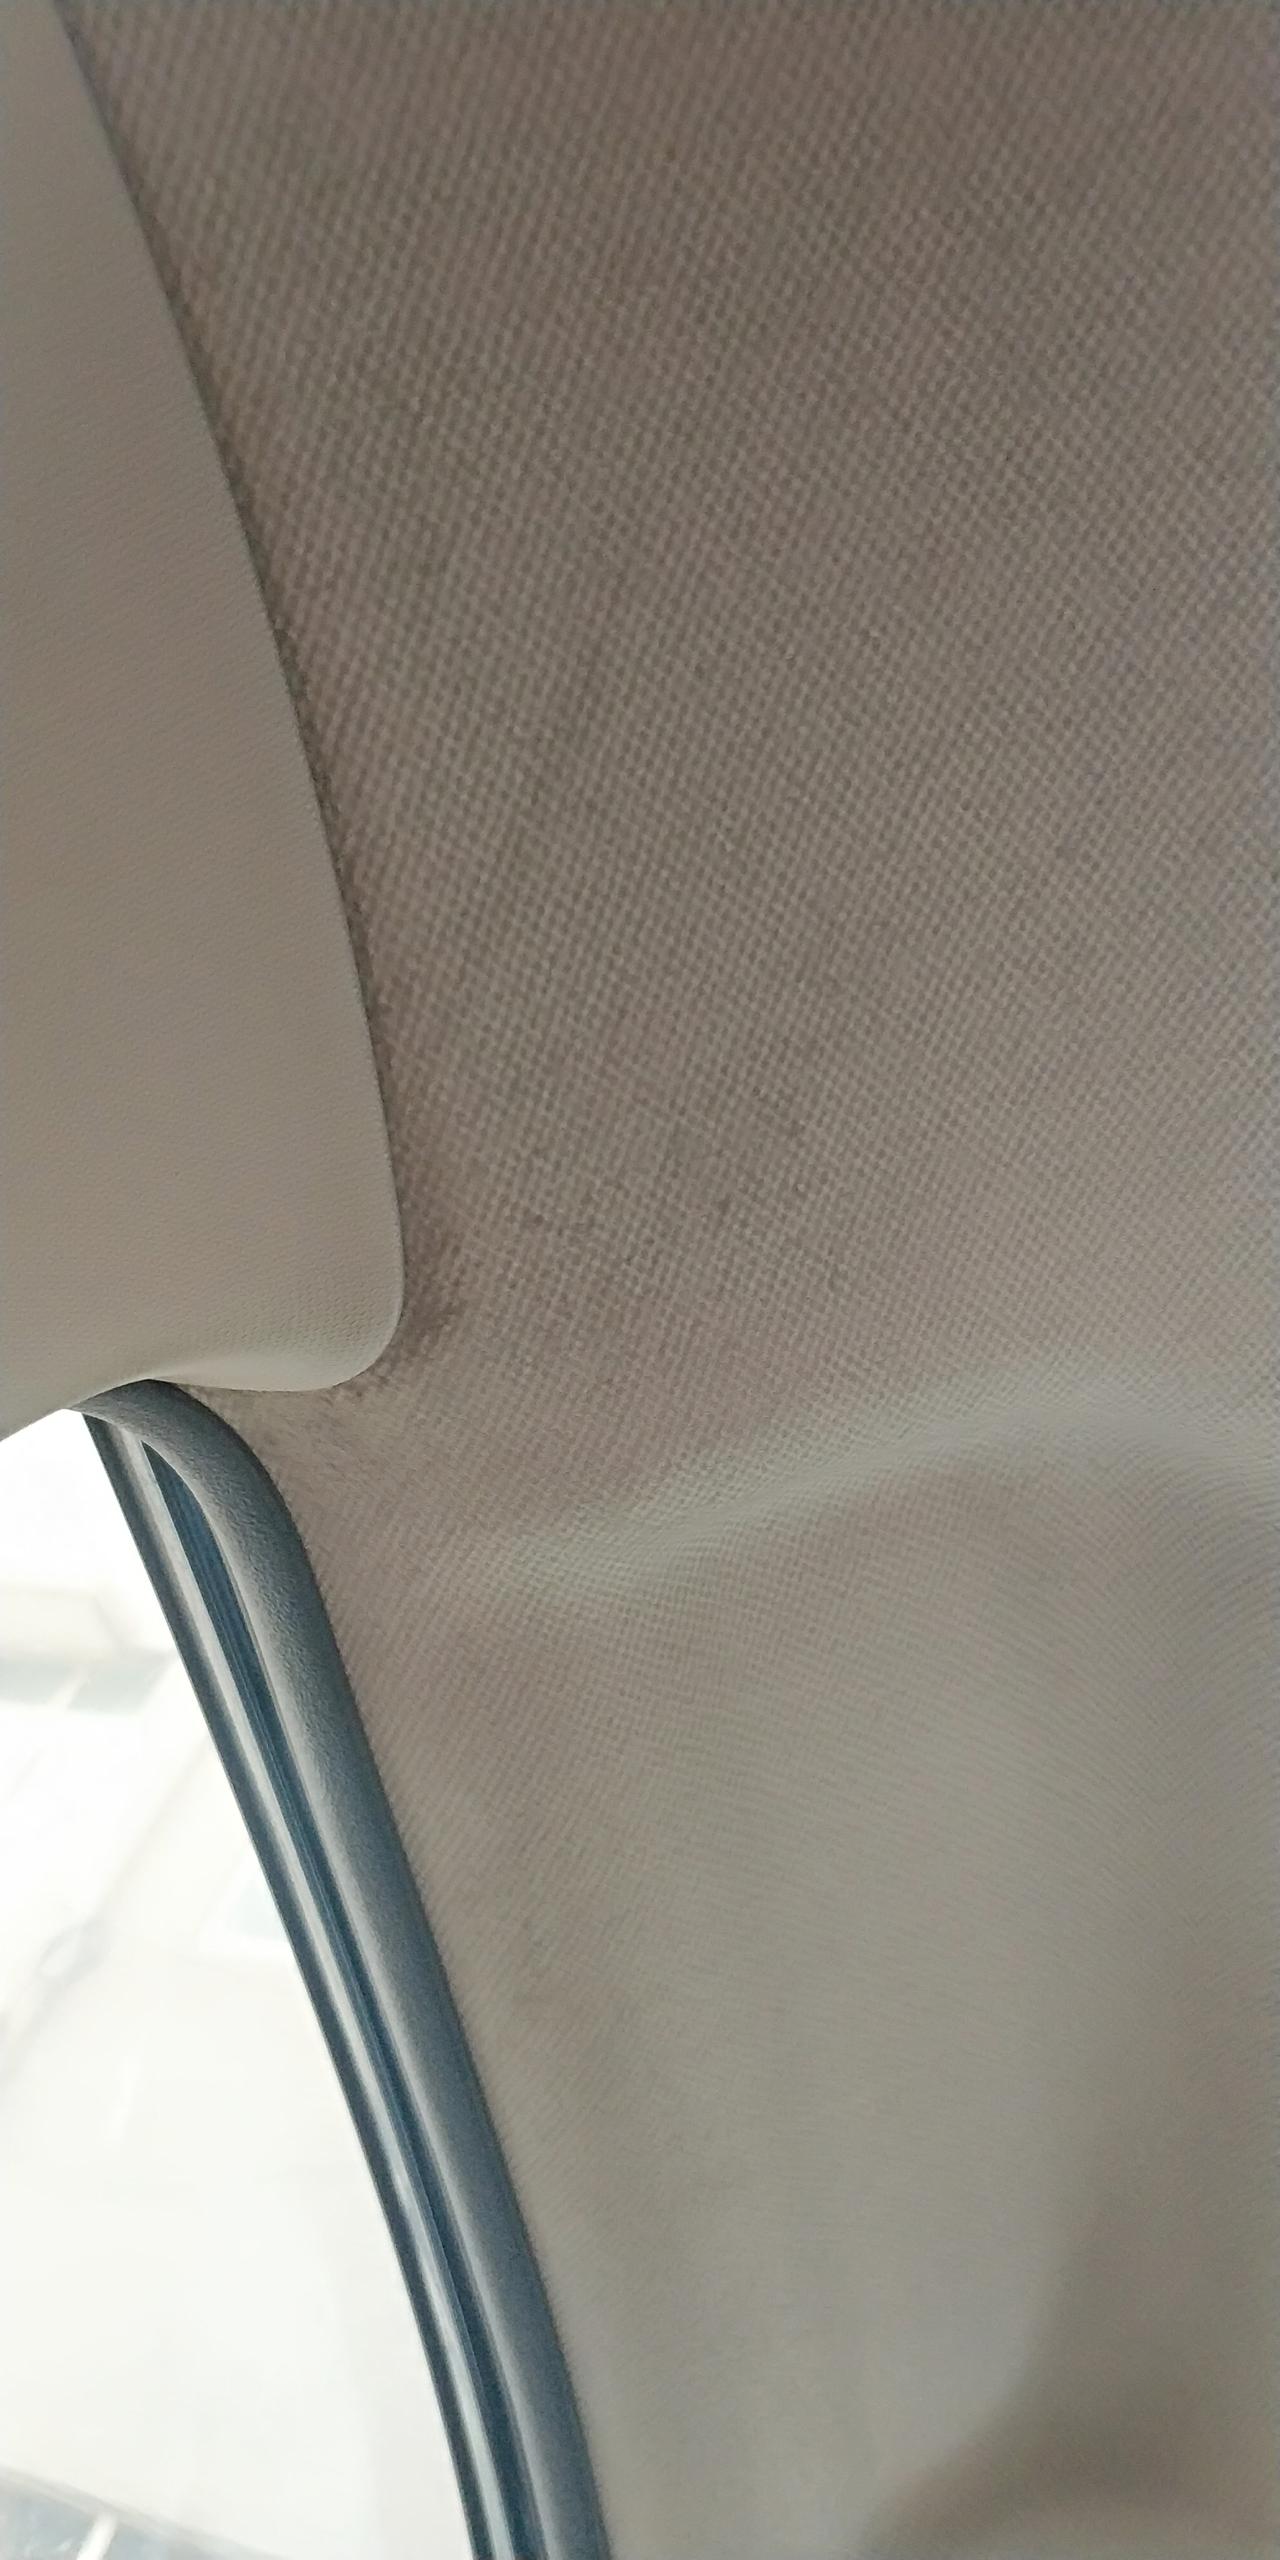 丰田卡罗拉 车驾驶座内顶有湿的痕迹，感觉还长毛是顶漏了嘛？副驾驶都没有的。